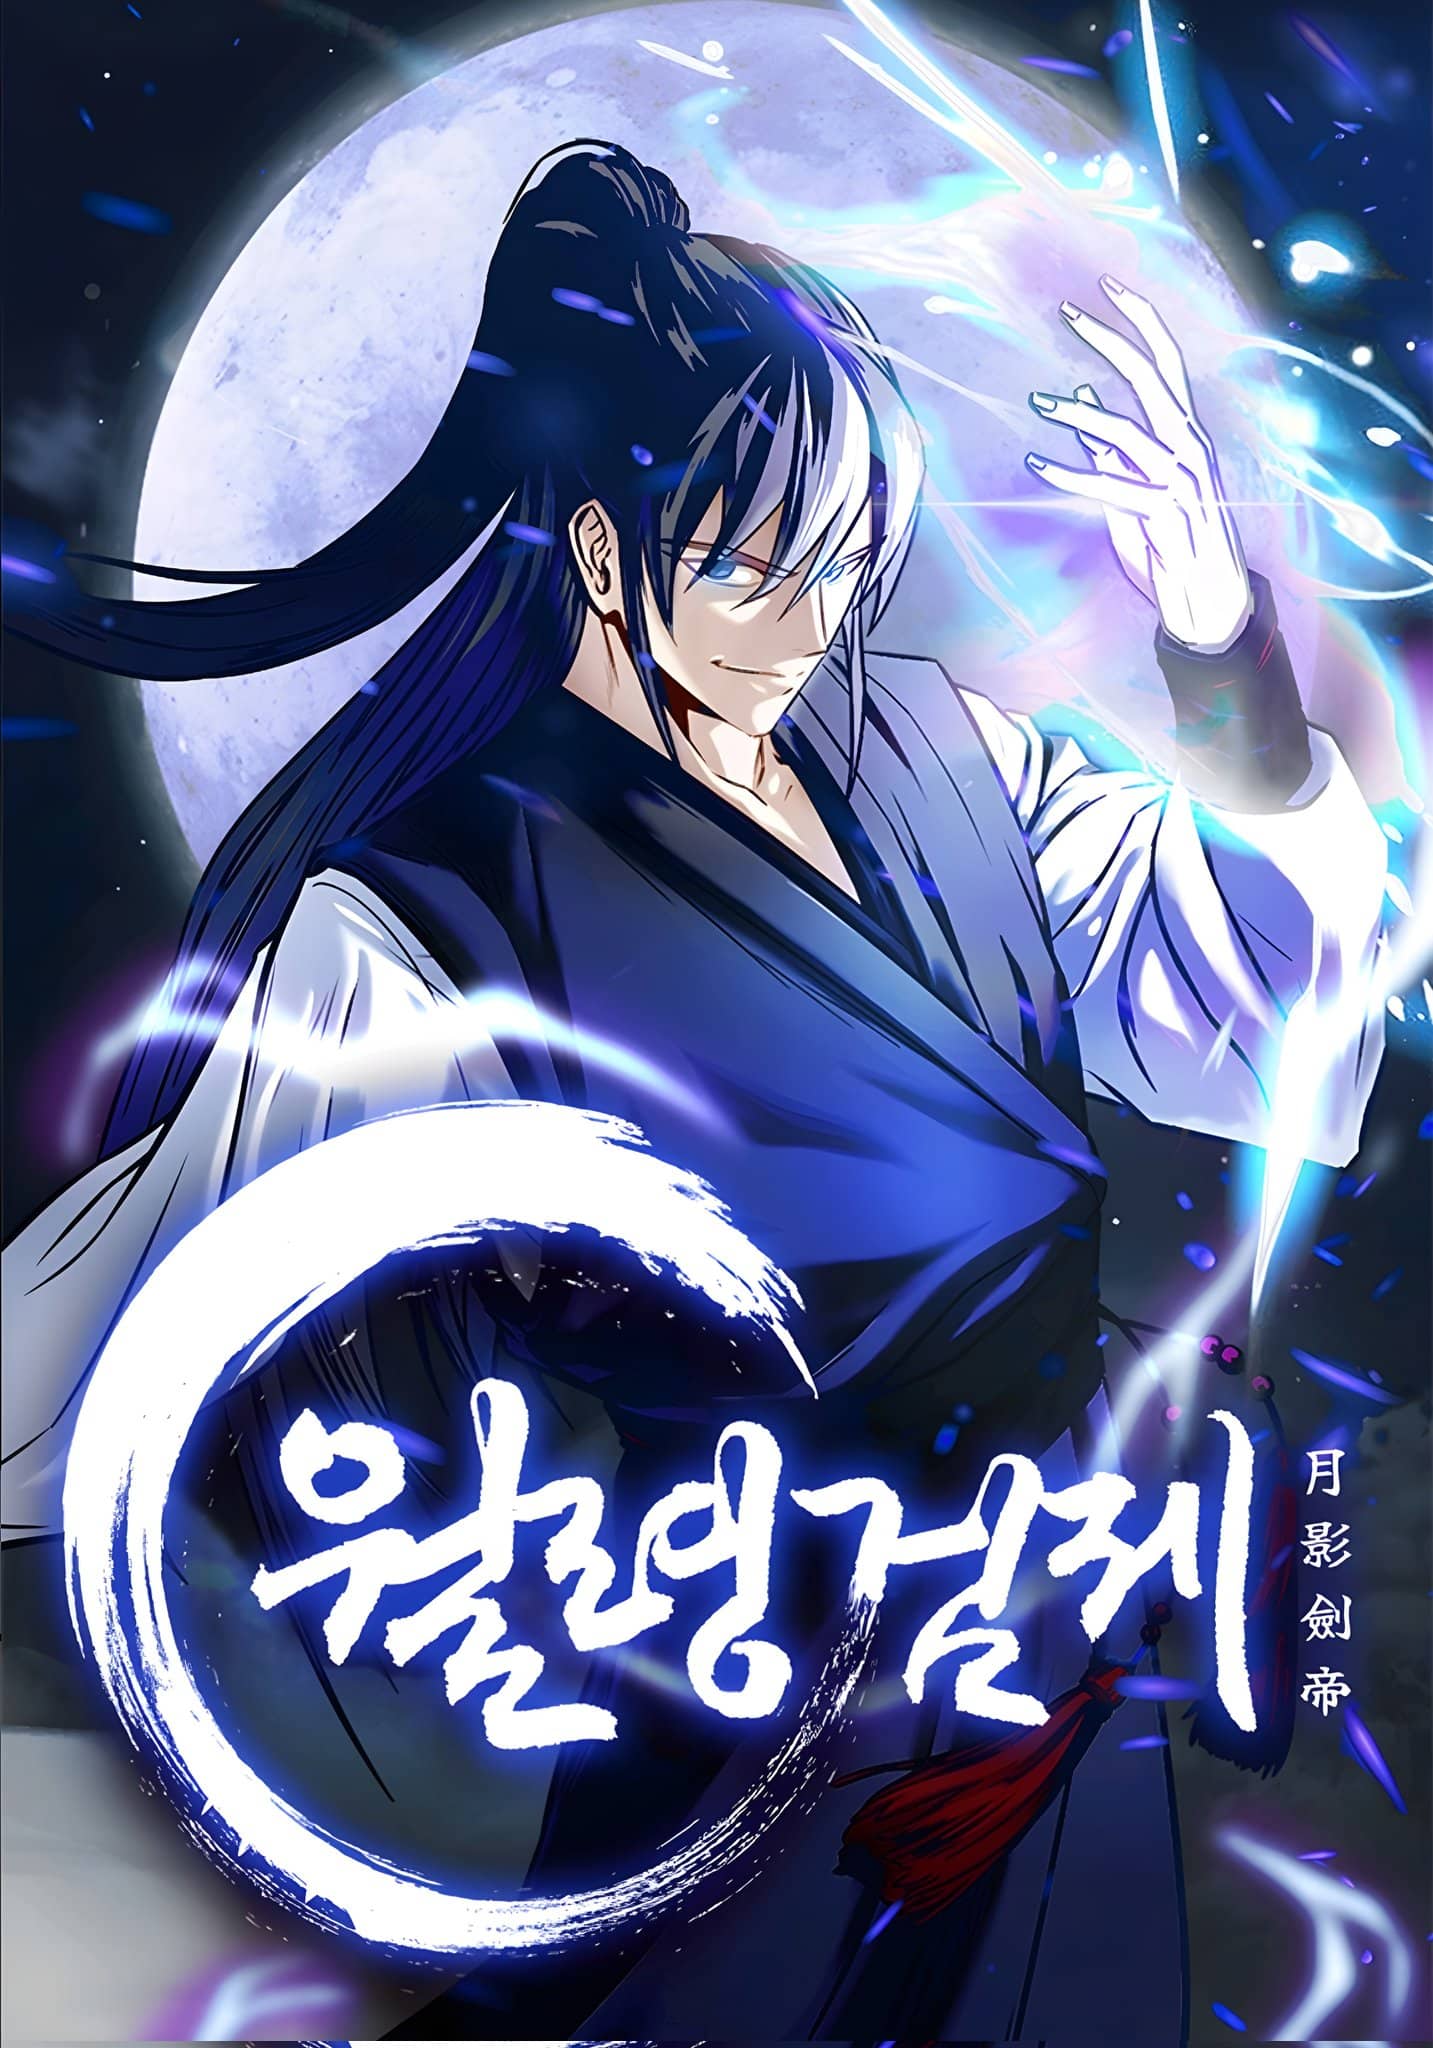 Moon Shadow Sword Emperor